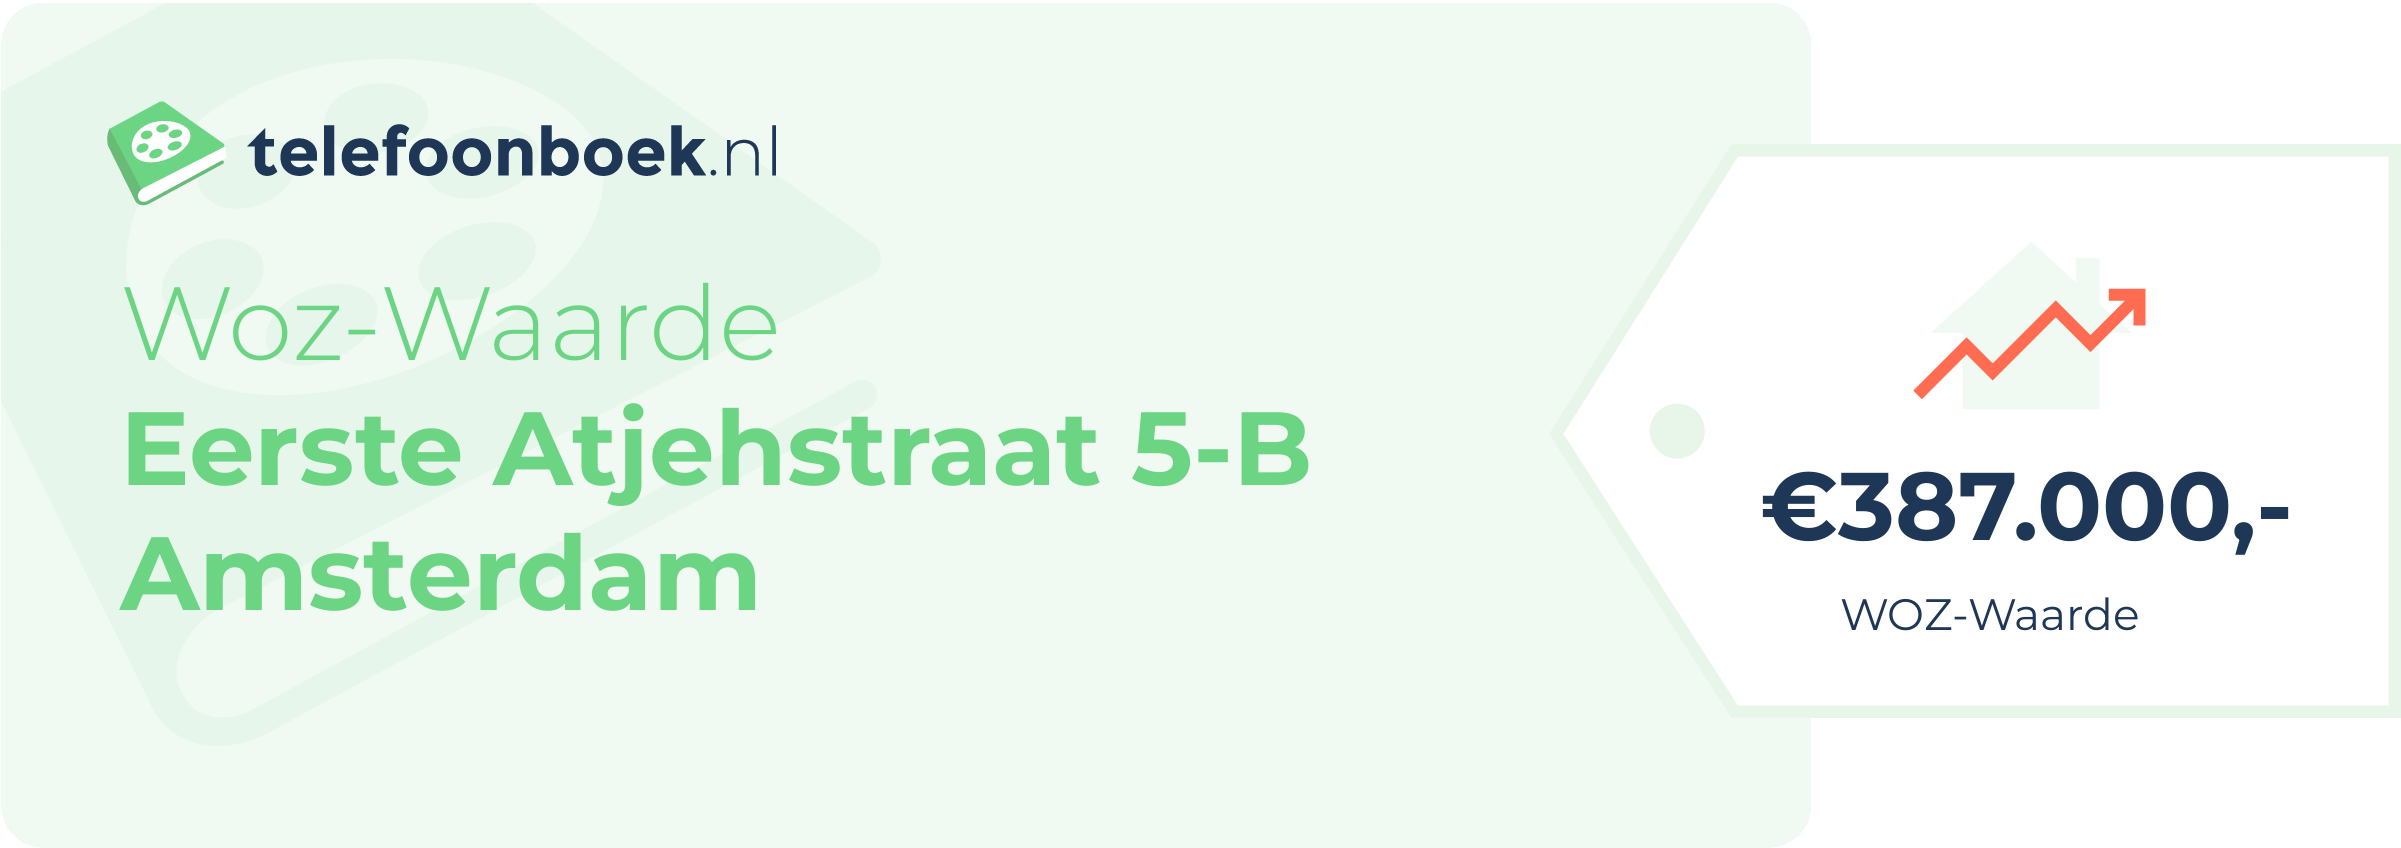 WOZ-waarde Eerste Atjehstraat 5-B Amsterdam